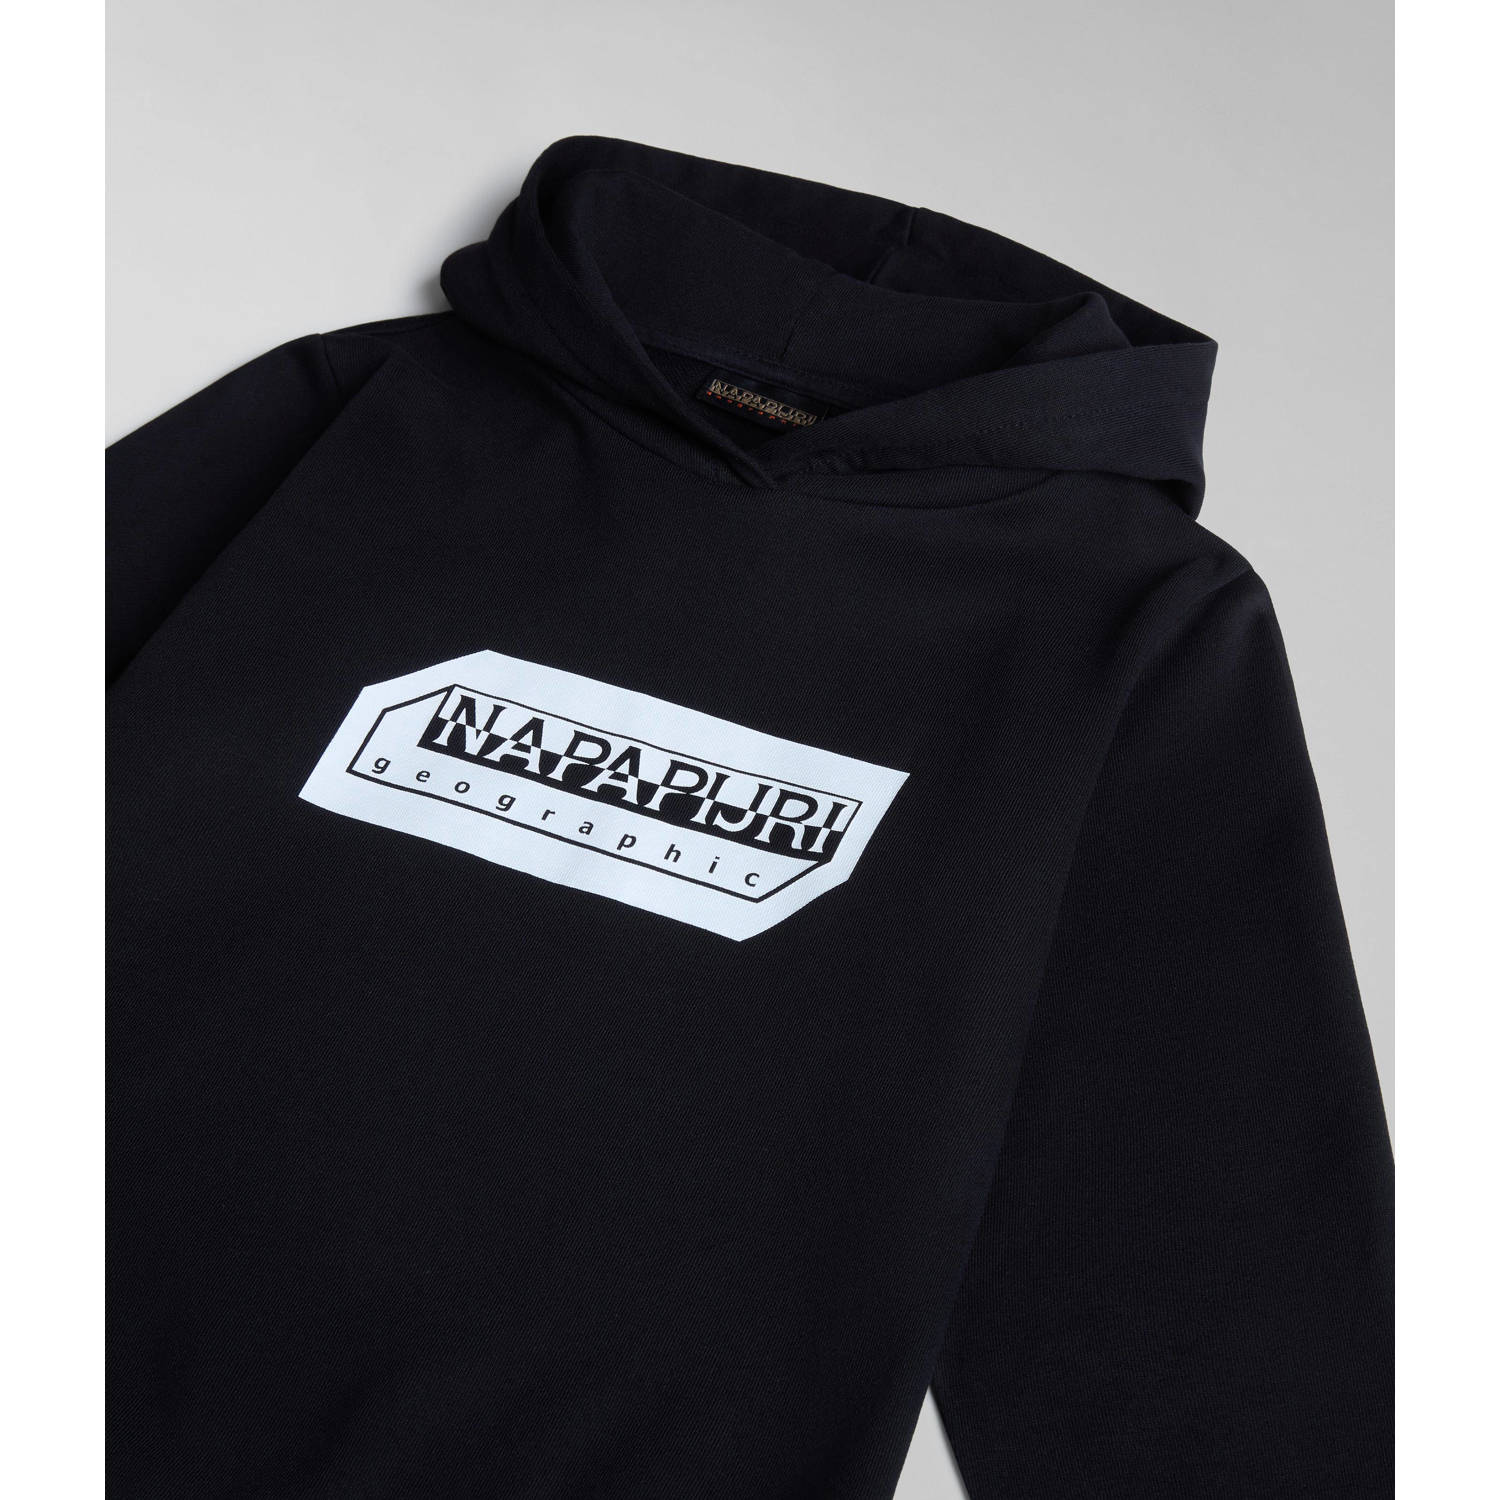 Napapijri hoodie met logo zwart wit